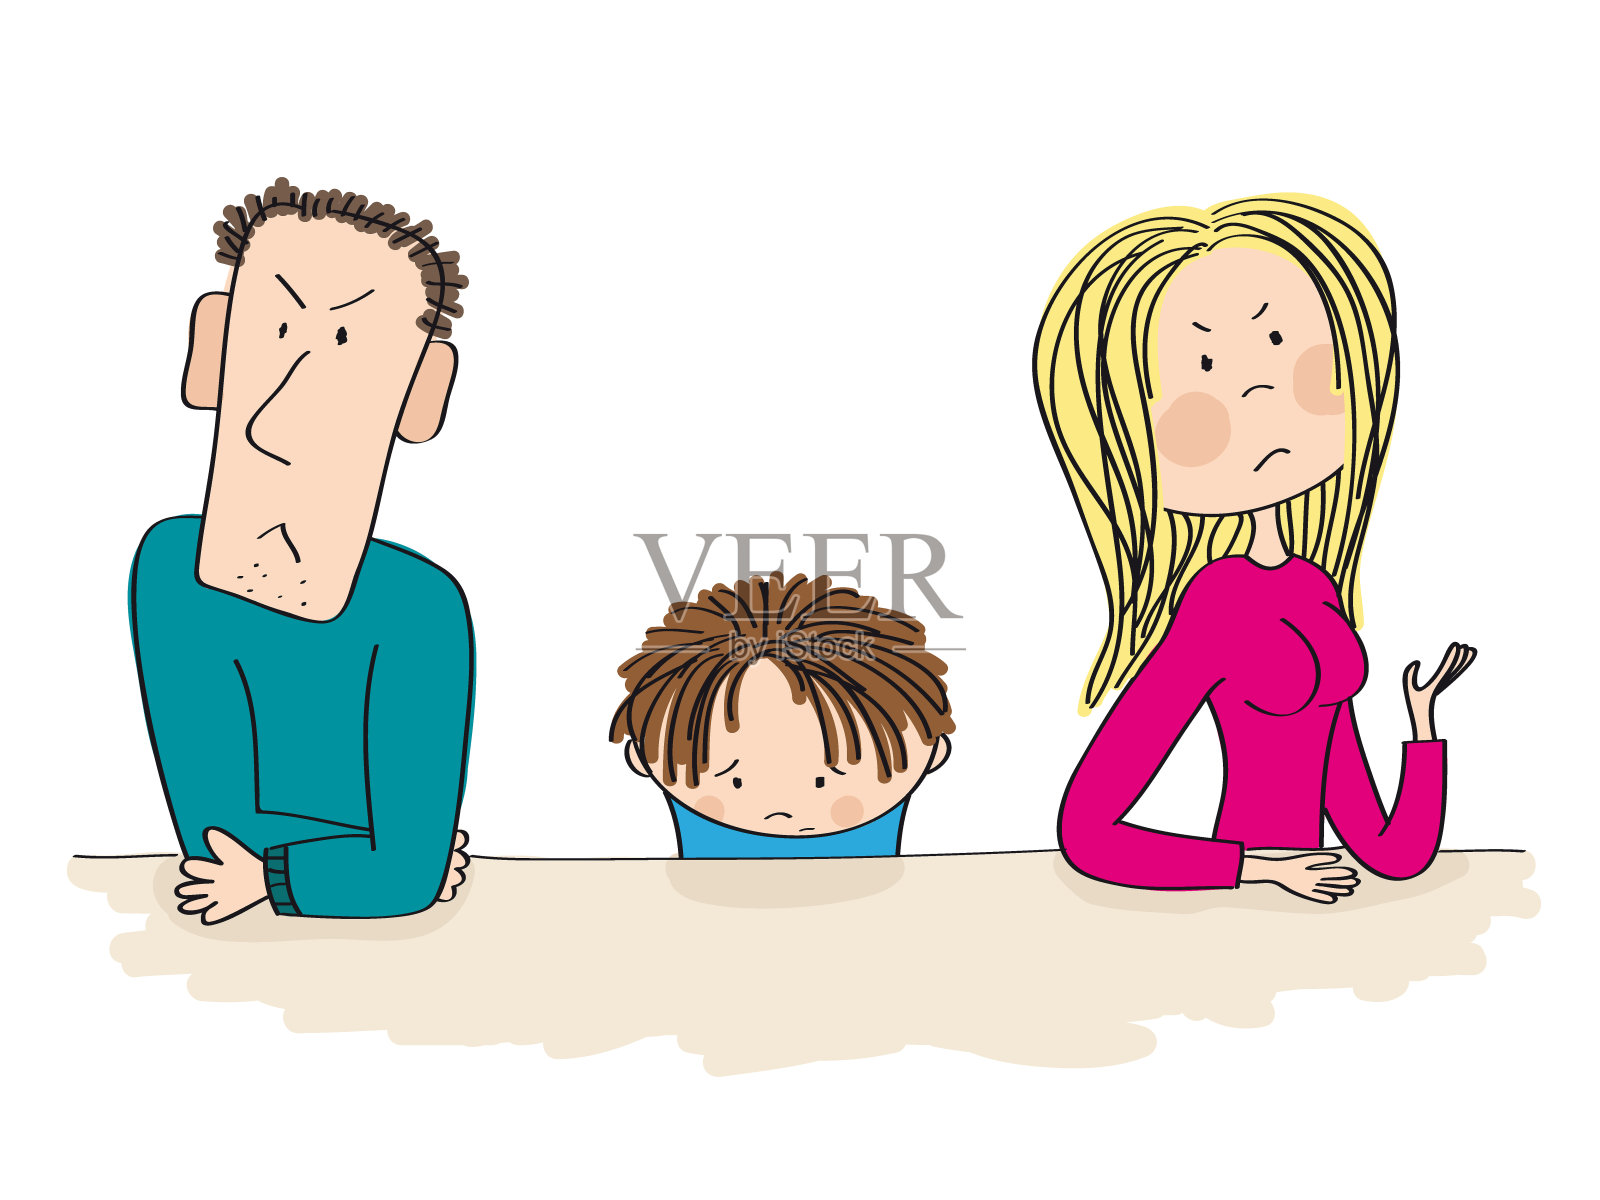 吵架的父母。他们的孩子，小男孩，正坐在他们之间，看起来很悲伤，正在考虑离婚。插画图片素材